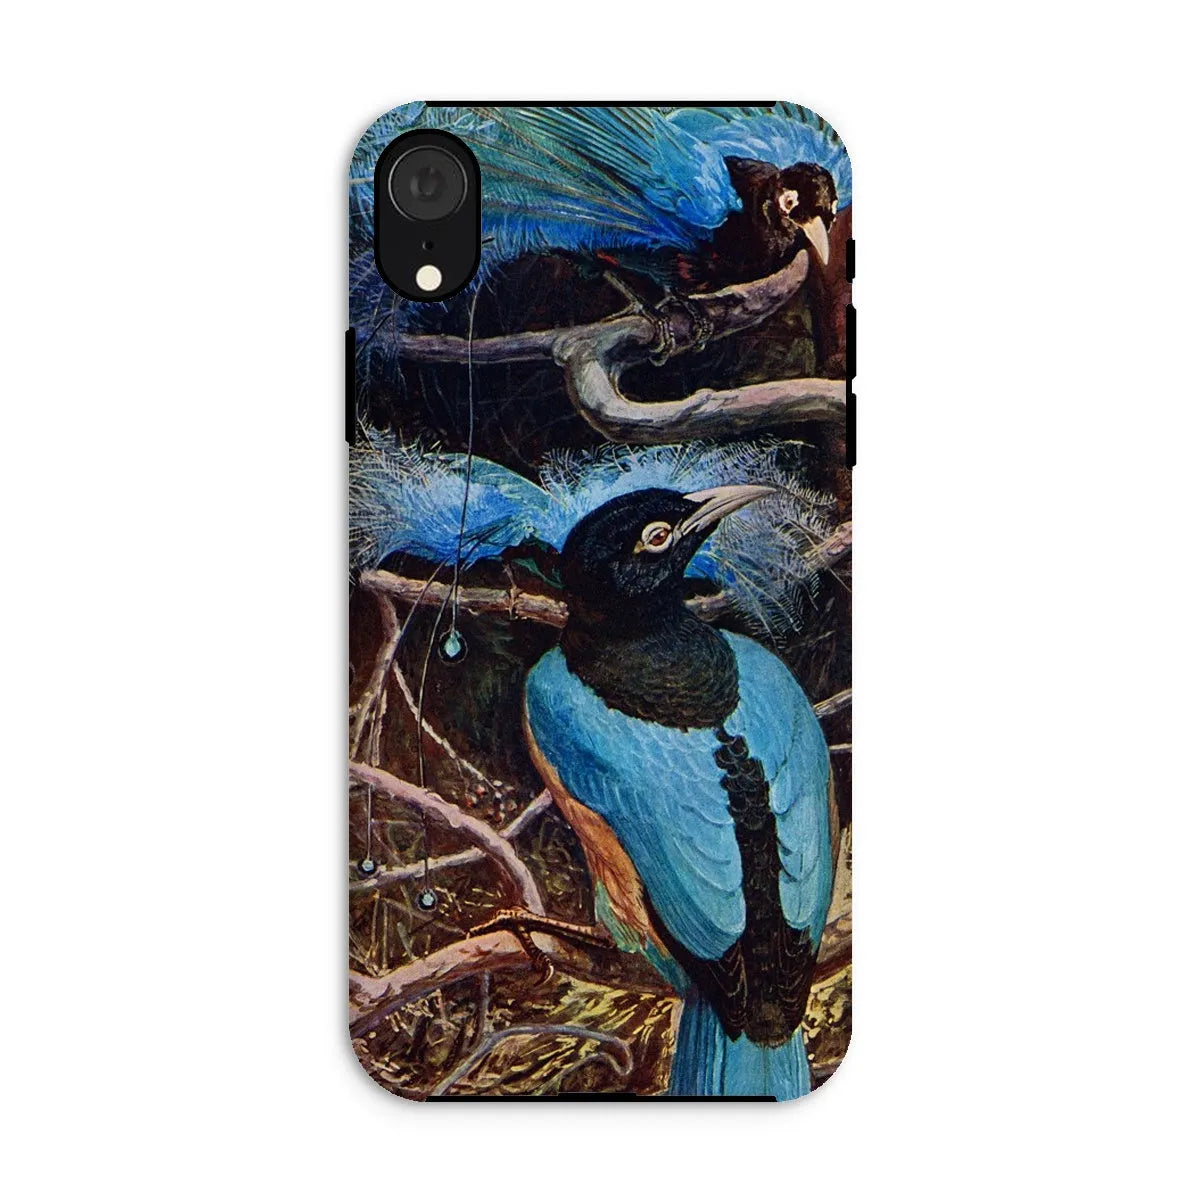 Blue Bird Of Paradise Aesthetic Phone Case - Henry Johnston - Iphone Xr / Matte - Mobile Phone Cases - Aesthetic Art